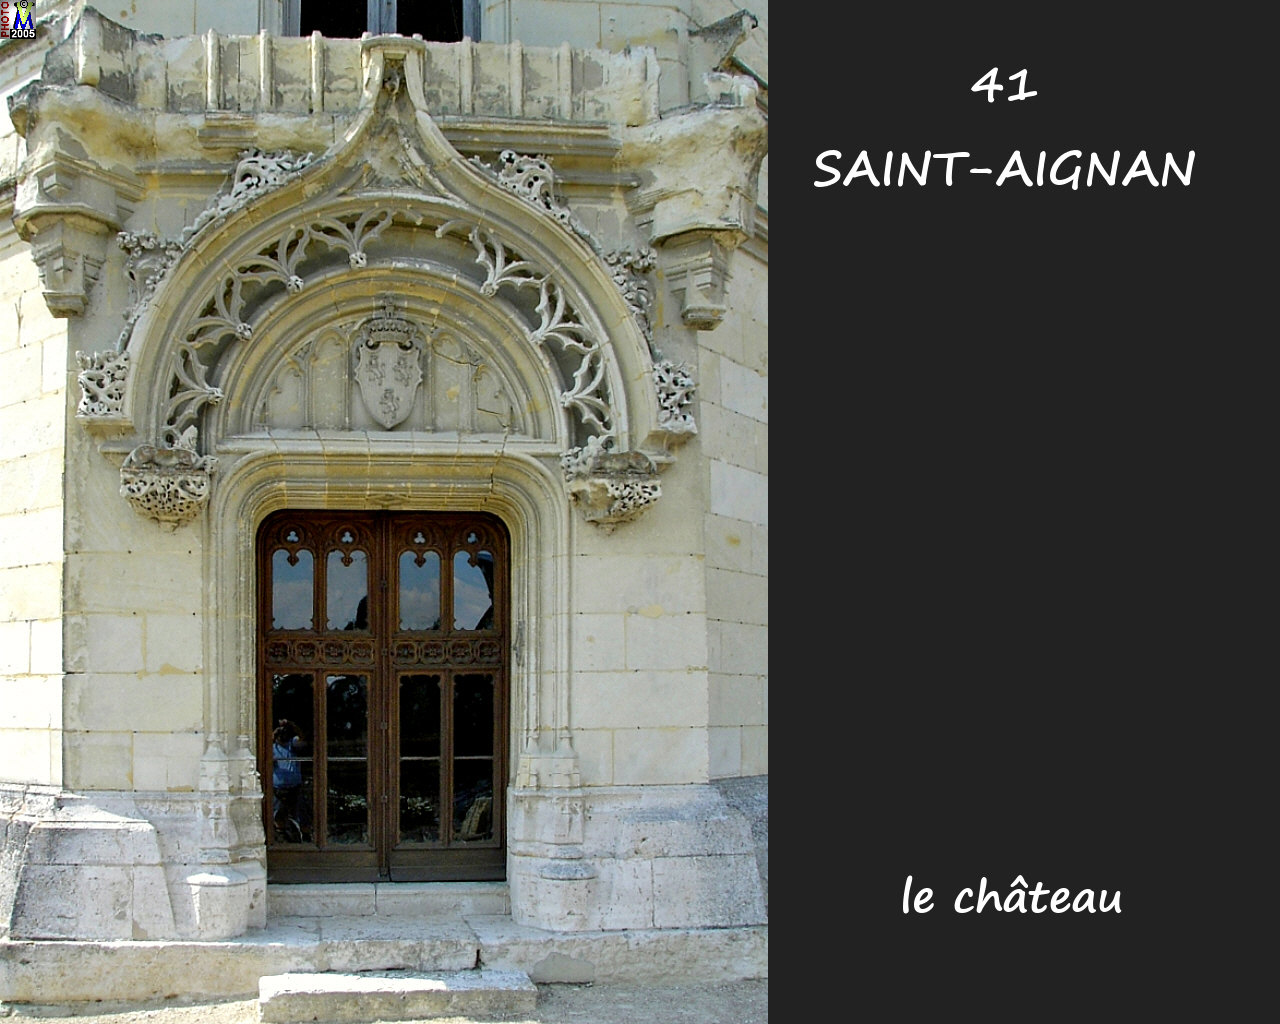 41STAIGNAN_chateau_510.jpg